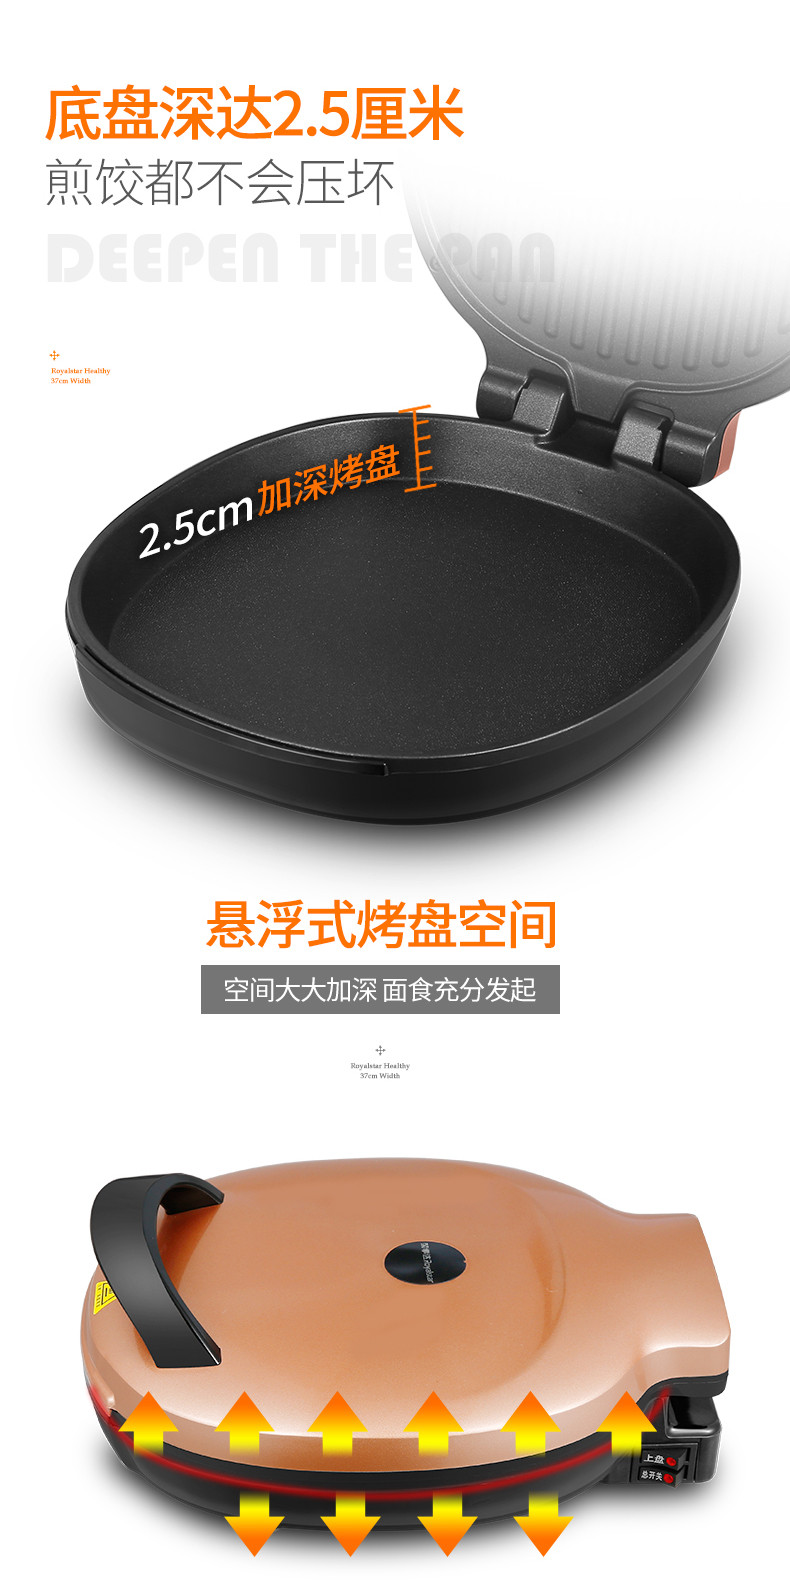 Royalstar/荣事达RS-D1211电饼铛双面加热家用悬浮蛋糕烙饼煎饼锅全自动薄饼机